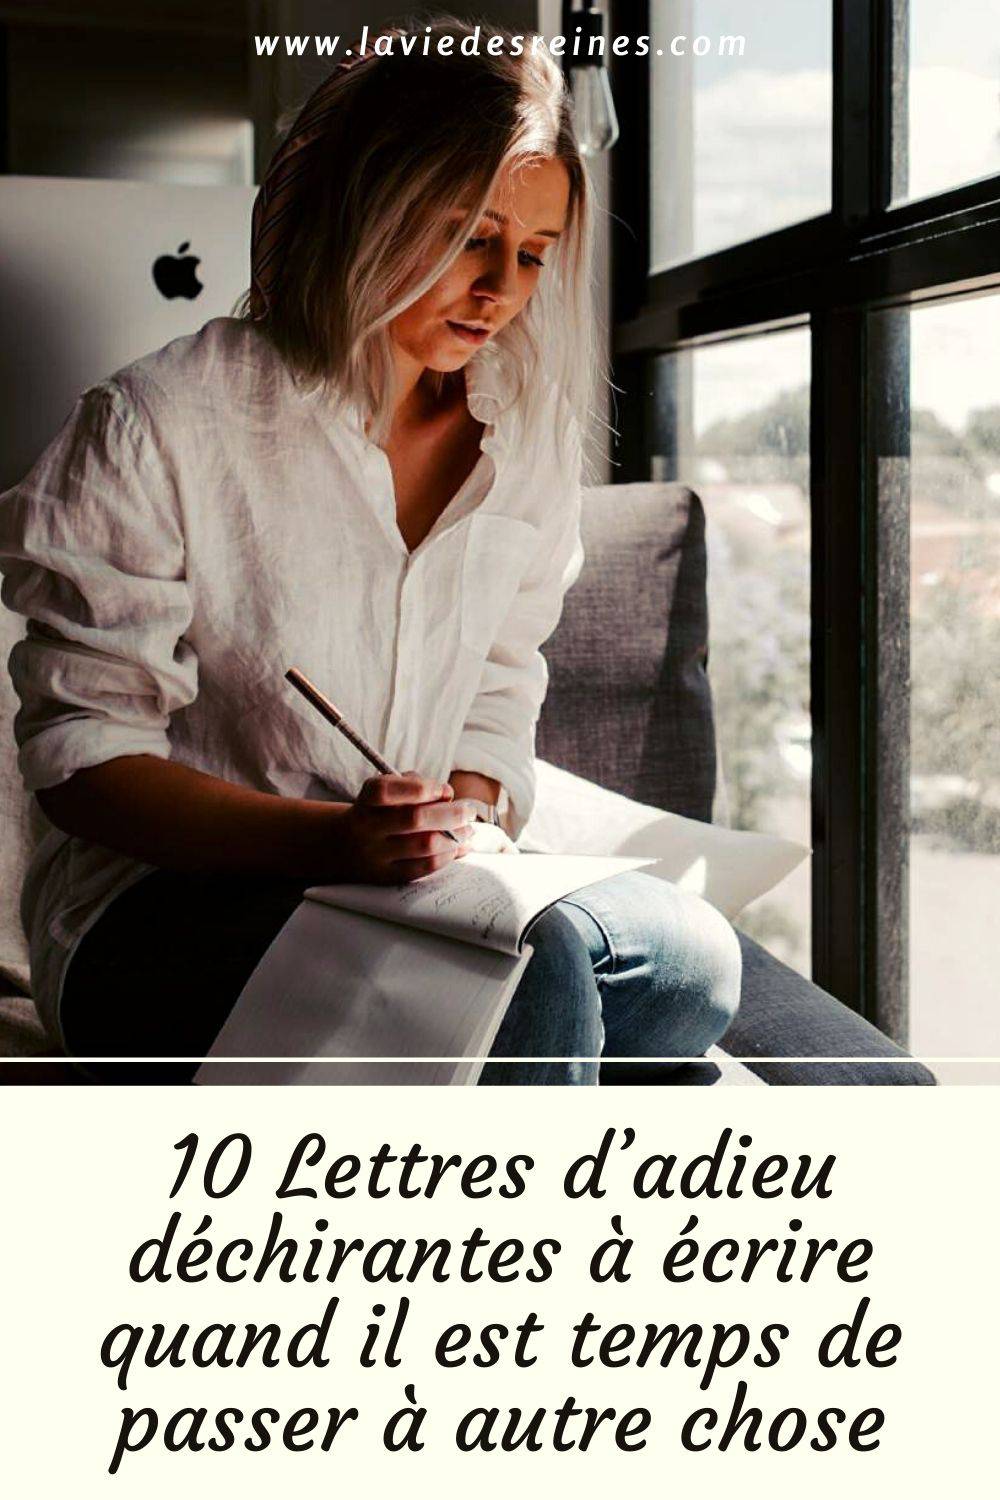 10 Lettres D Adieu Dechirantes A Ecrire Quand Il Est Temps De Passer A Autre Chose